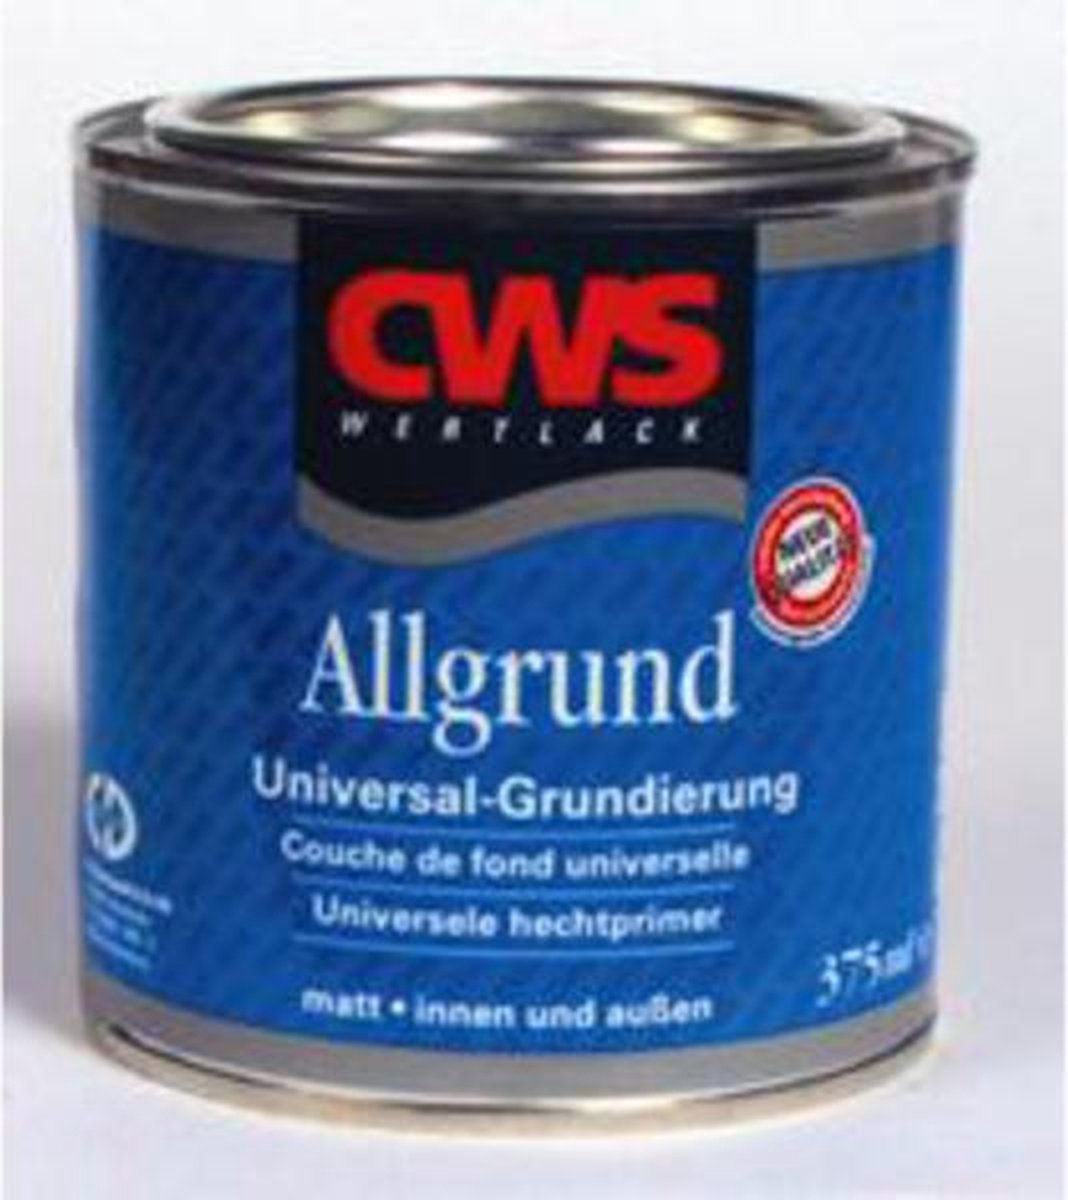 Cws 9005 Allgrund Grondverf - 375 ml